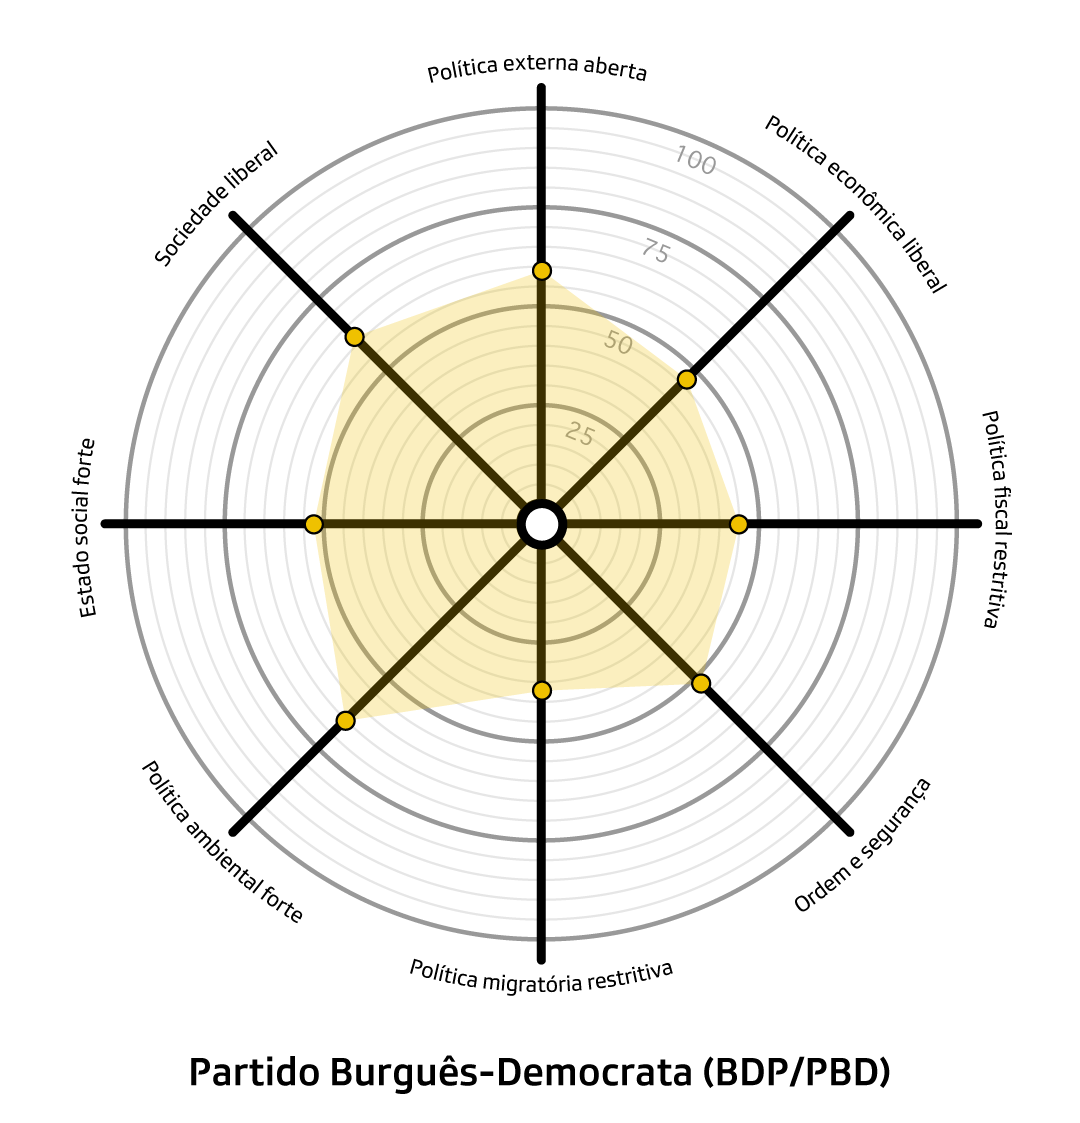 gráfico smartspider do partido democrata-burguês